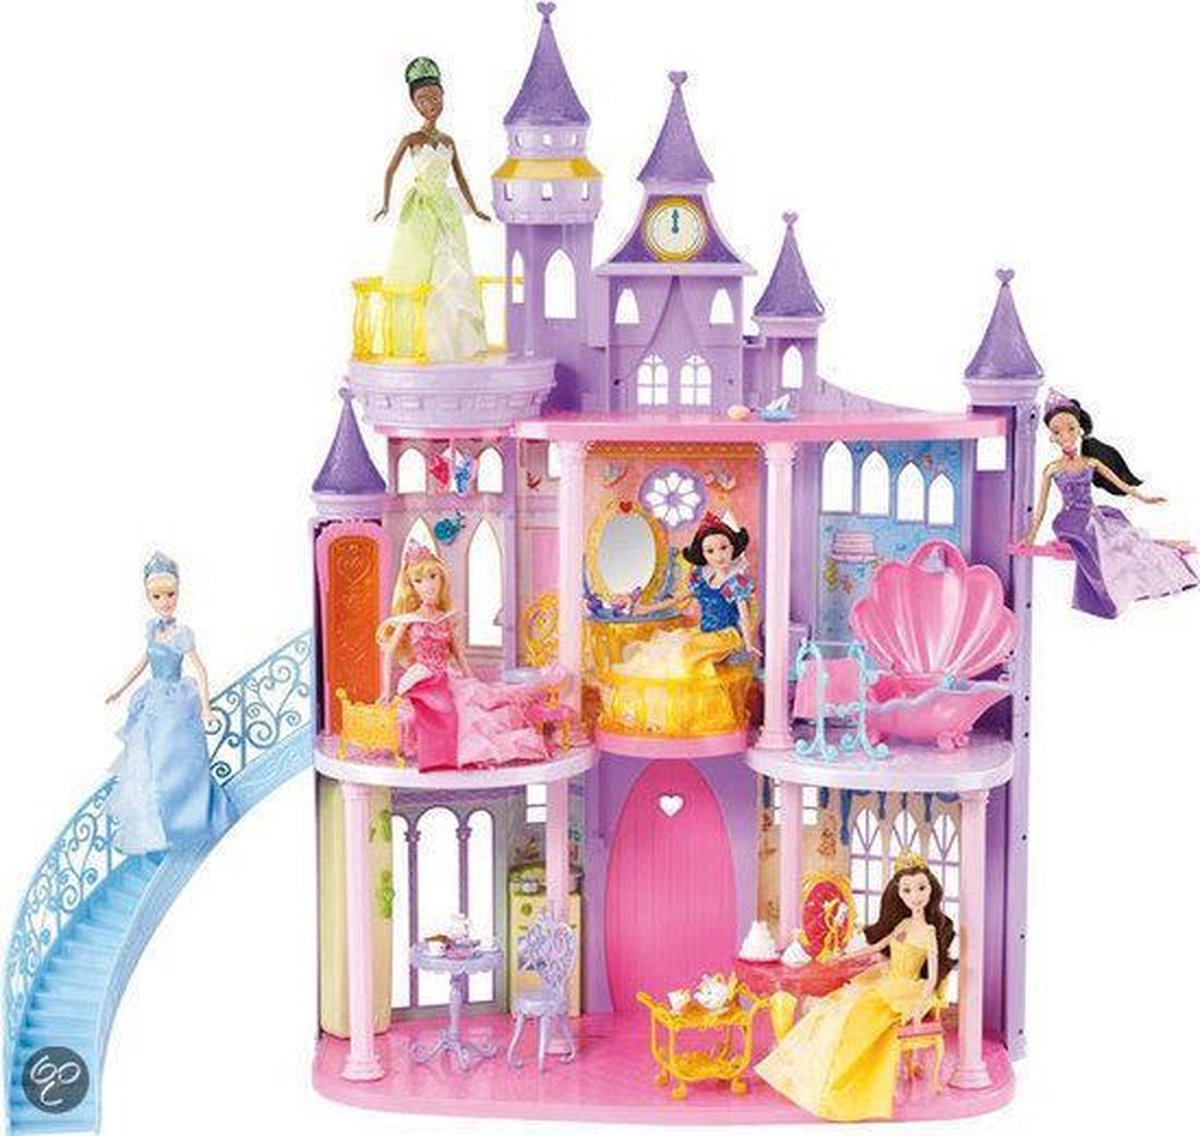 tellen Vol Verklaring Disney Princess Kasteel | bol.com